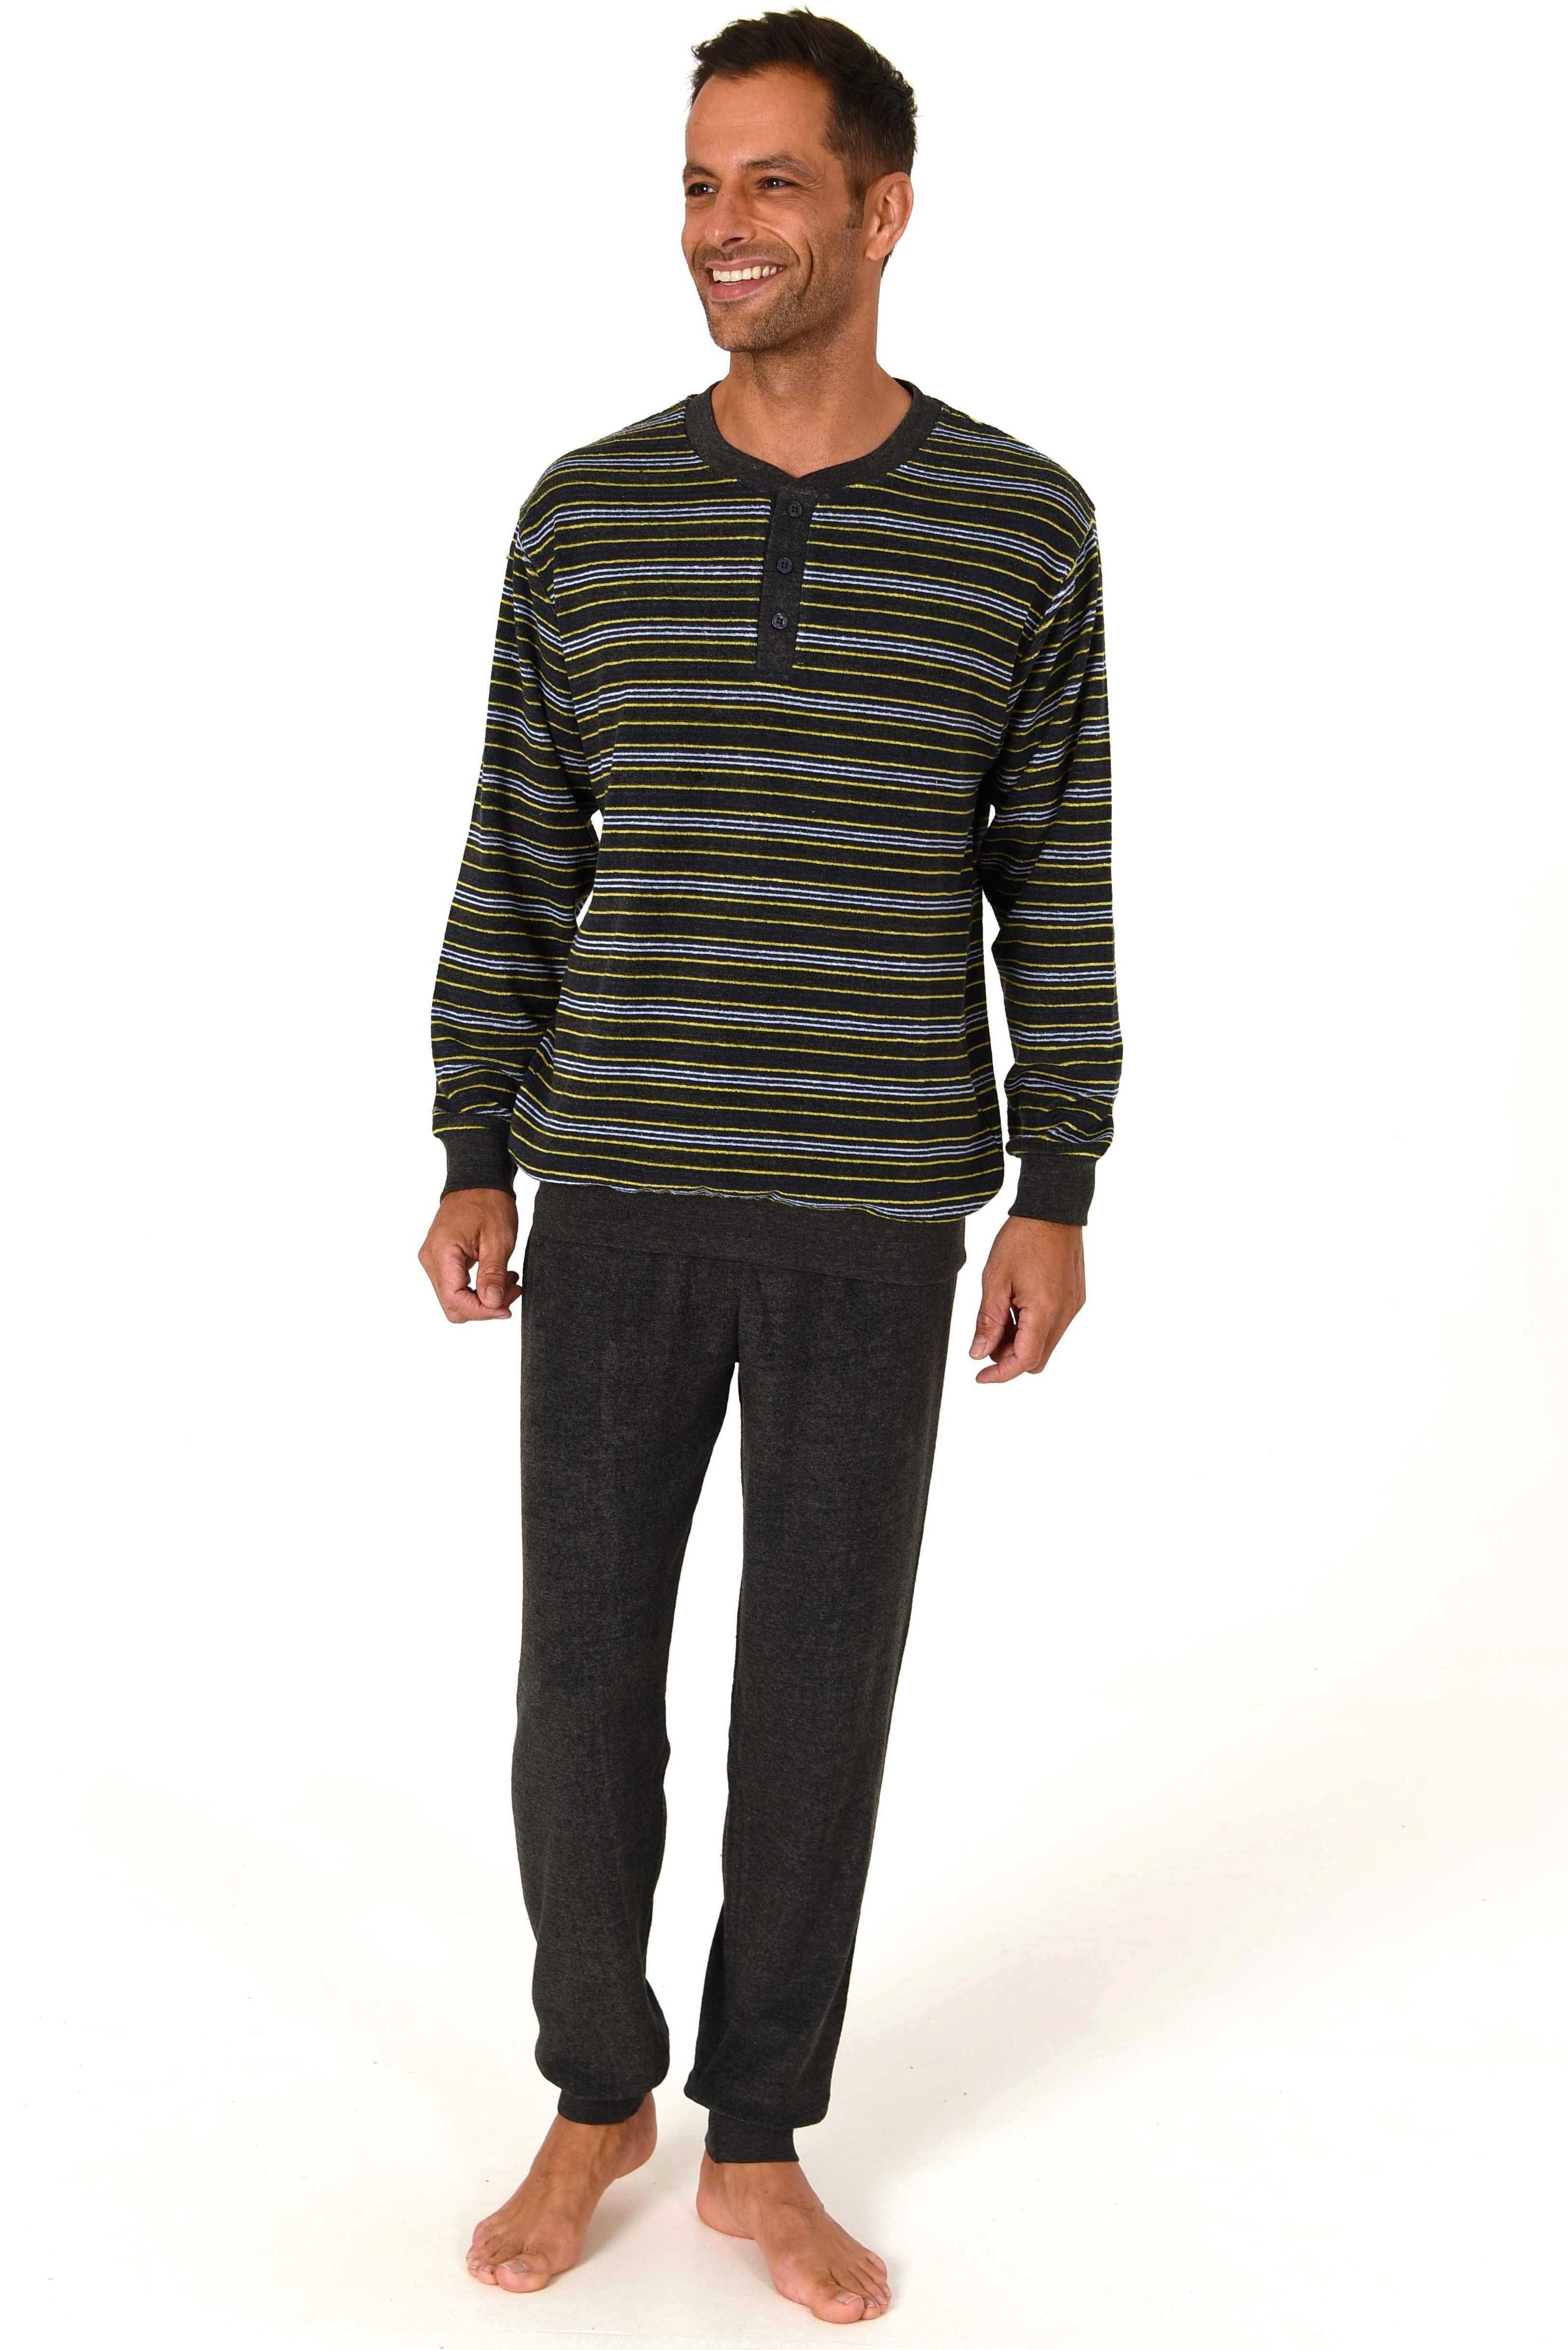 Normann badstof heren pyjama Trend 70259 - Geel - 3XL/58